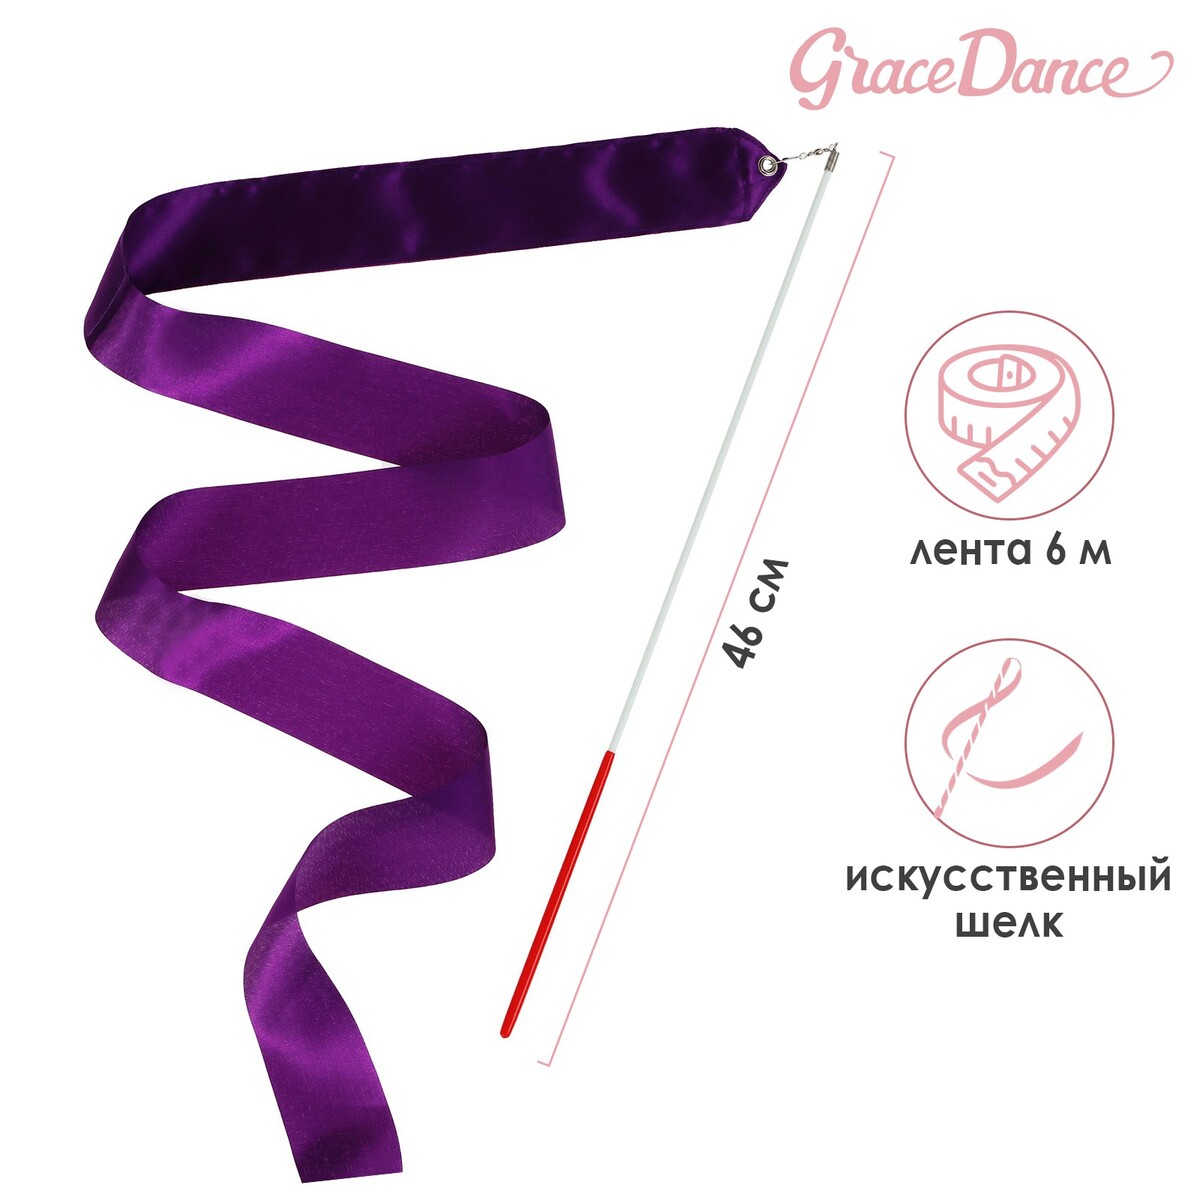 Лента для художественной гимнастики с палочкой grace dance, 6 м, цвет фиолетовый